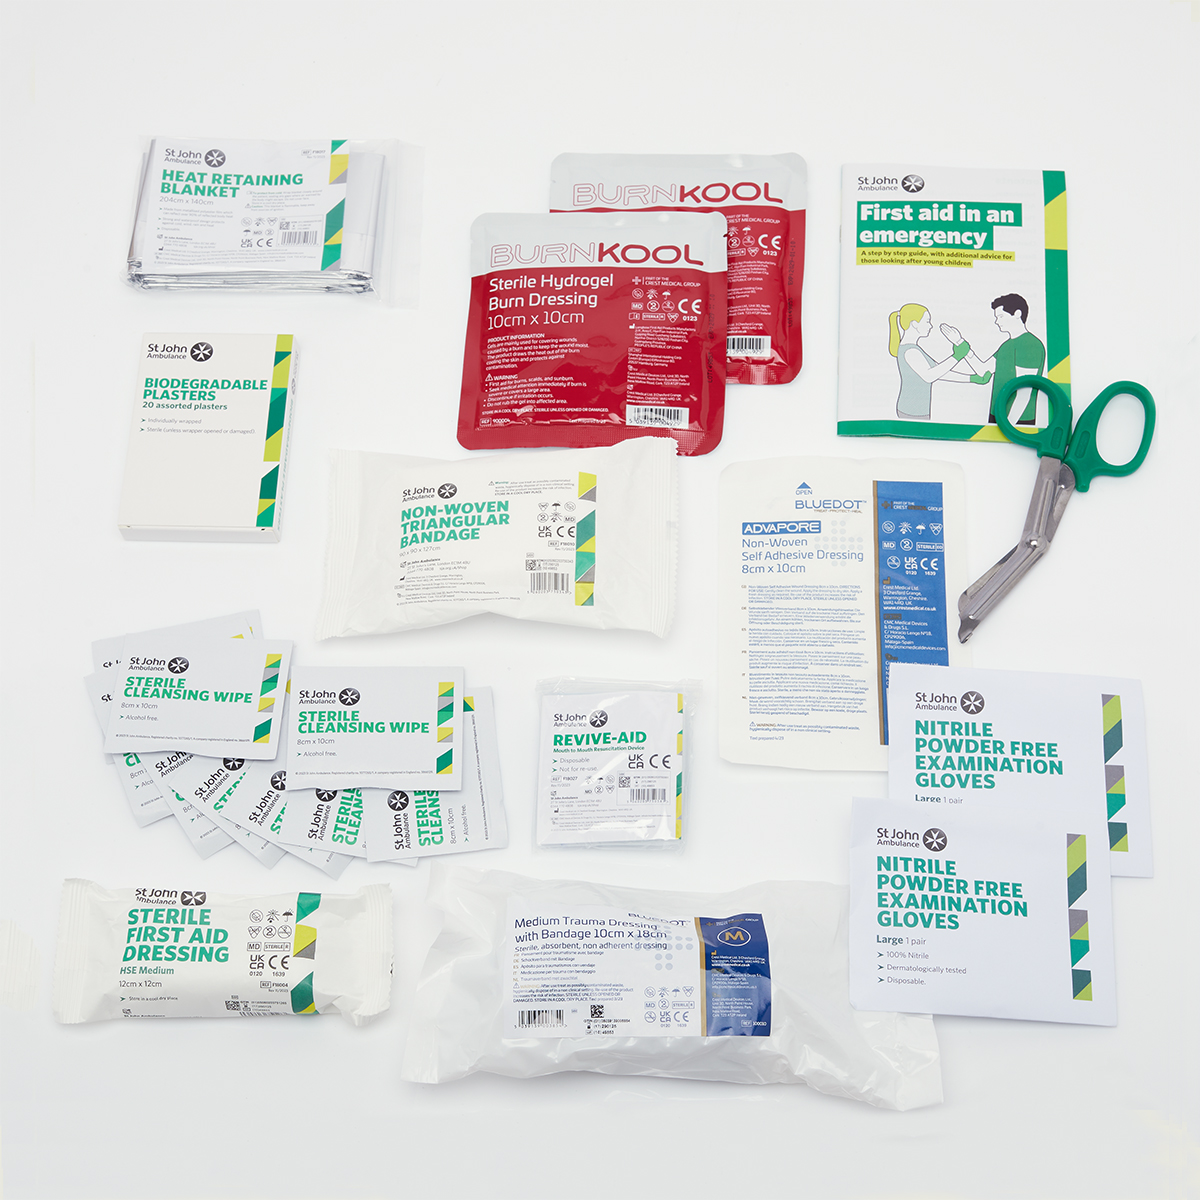 St John Ambulance Medium Motor Vehicle First Aid Kit BS 8599-2:2014